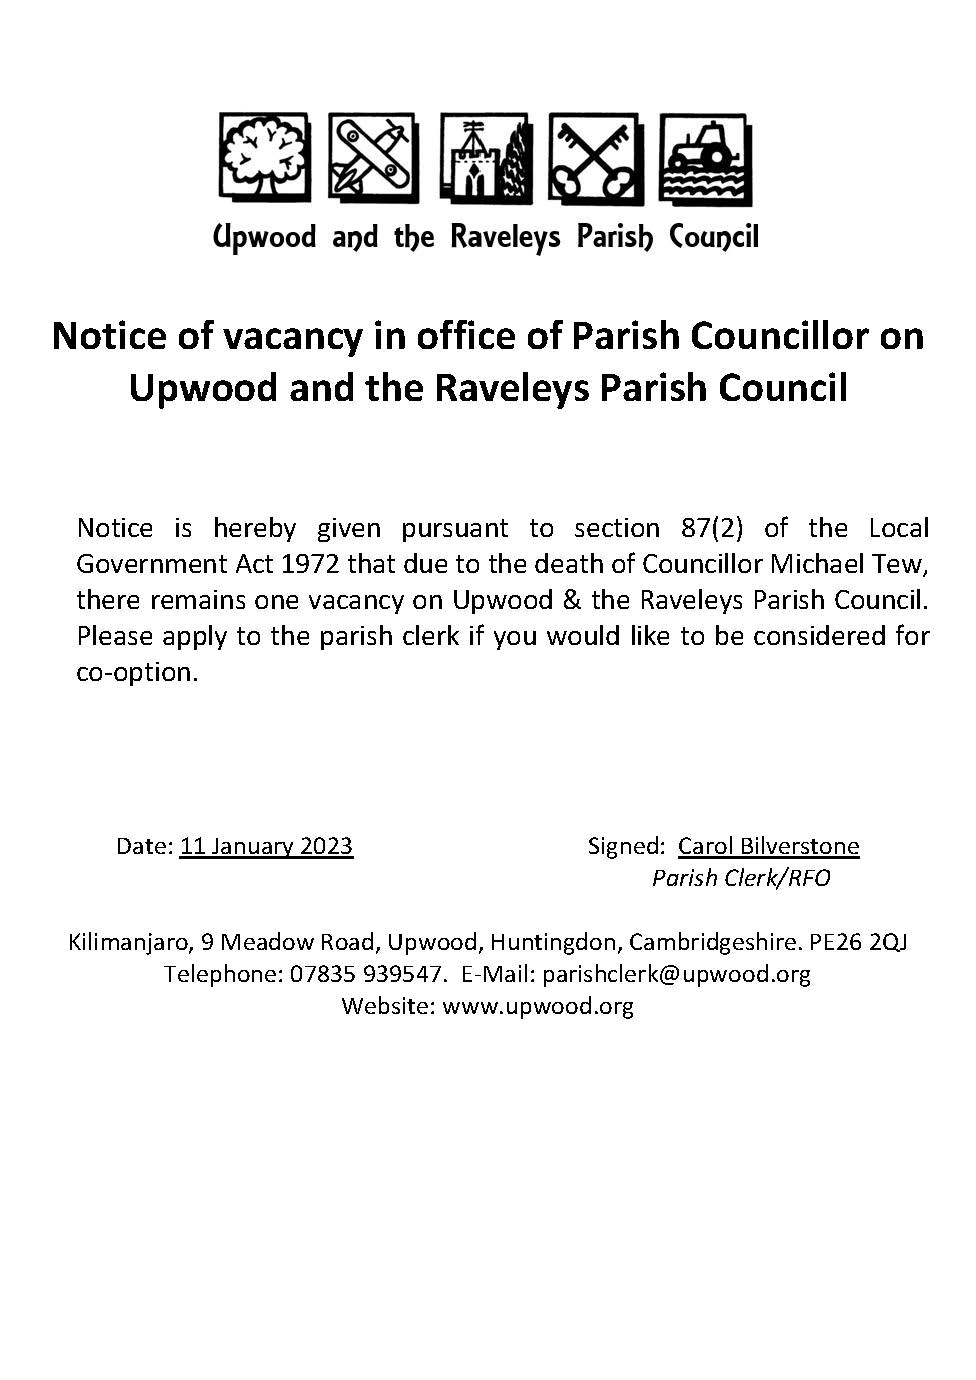 Notice of Vacancy for a Parish Councillor. 11.01.23